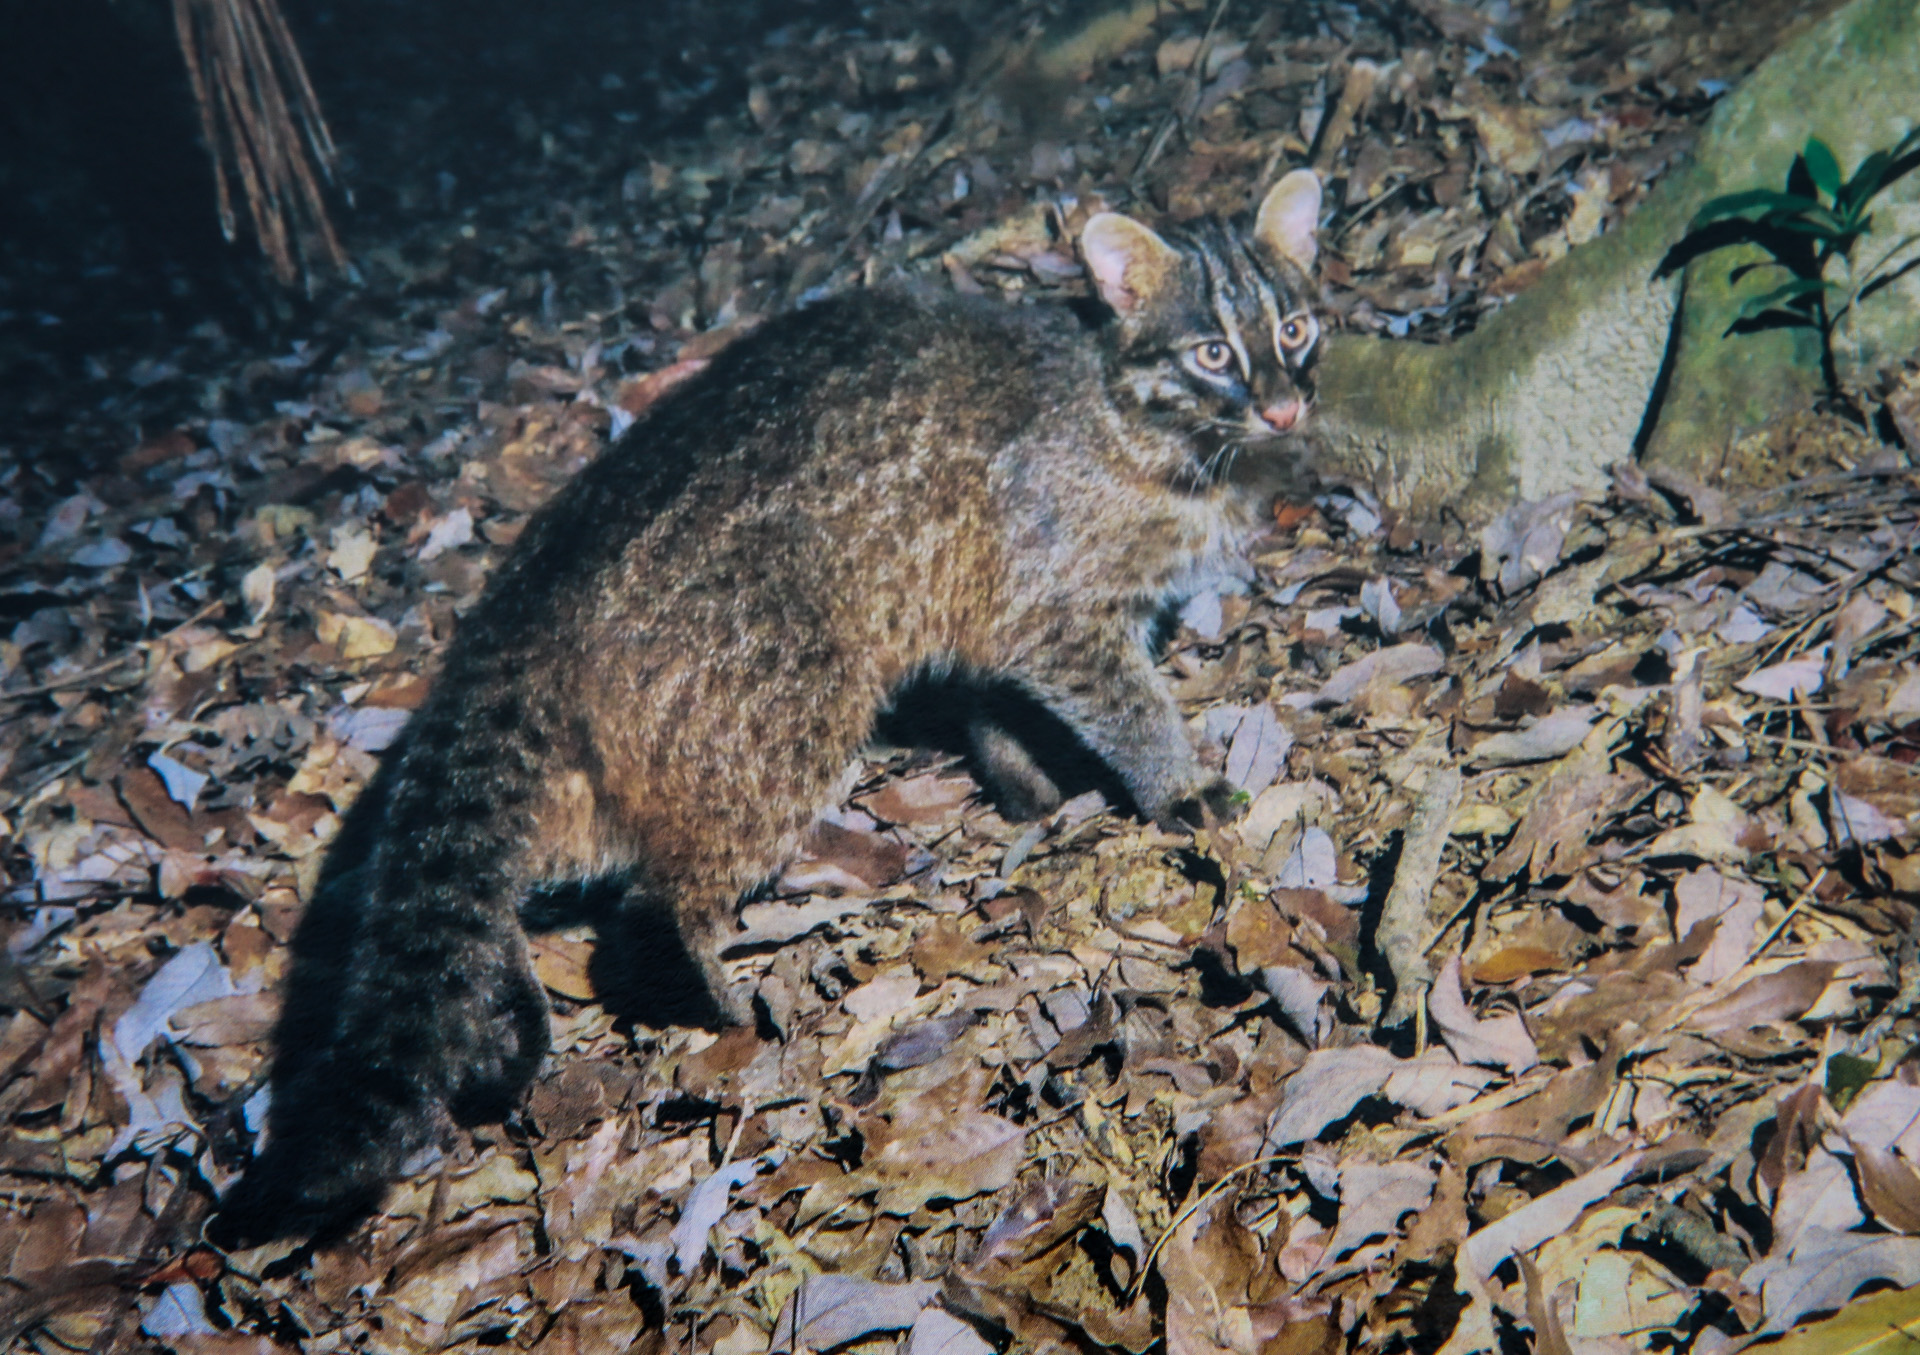  Prionailurus bengalensis iriomotensis », en d’autres termes le chat sauvage endémique